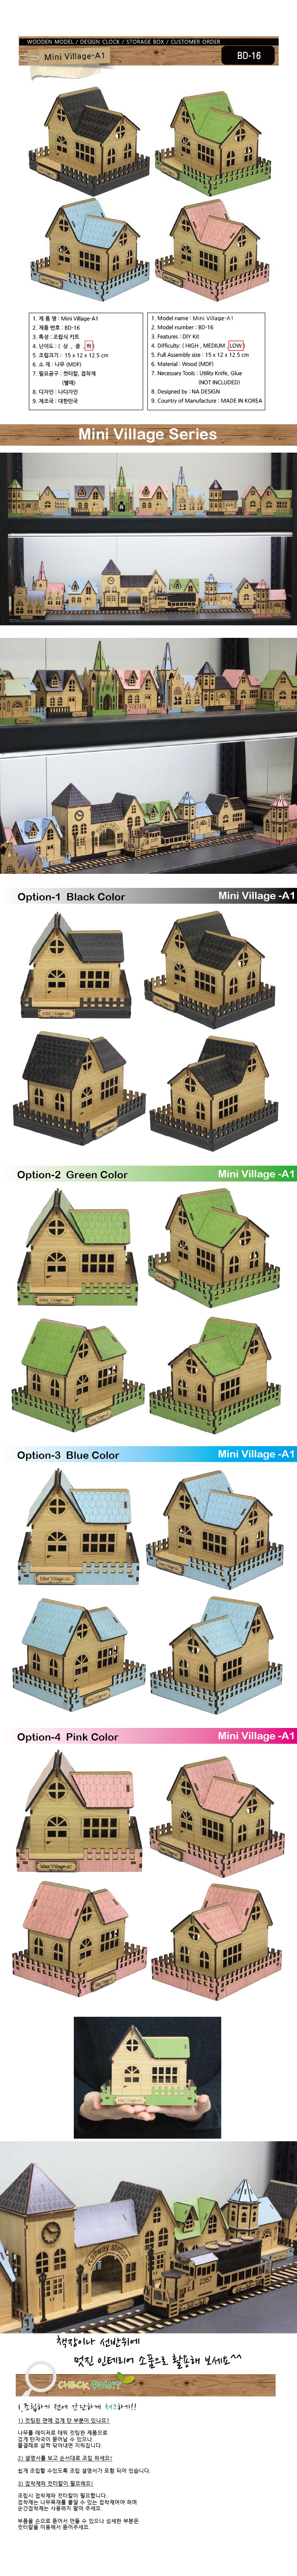 미니어처 모형 마을 시리즈 Mini Village-A1 (집) 12,900원 - 나디자인 키덜트/취미, 블록/퍼즐, 조각/퍼즐, 3D입체퍼즐 바보사랑 미니어처 모형 마을 시리즈 Mini Village-A1 (집) 12,900원 - 나디자인 키덜트/취미, 블록/퍼즐, 조각/퍼즐, 3D입체퍼즐 바보사랑